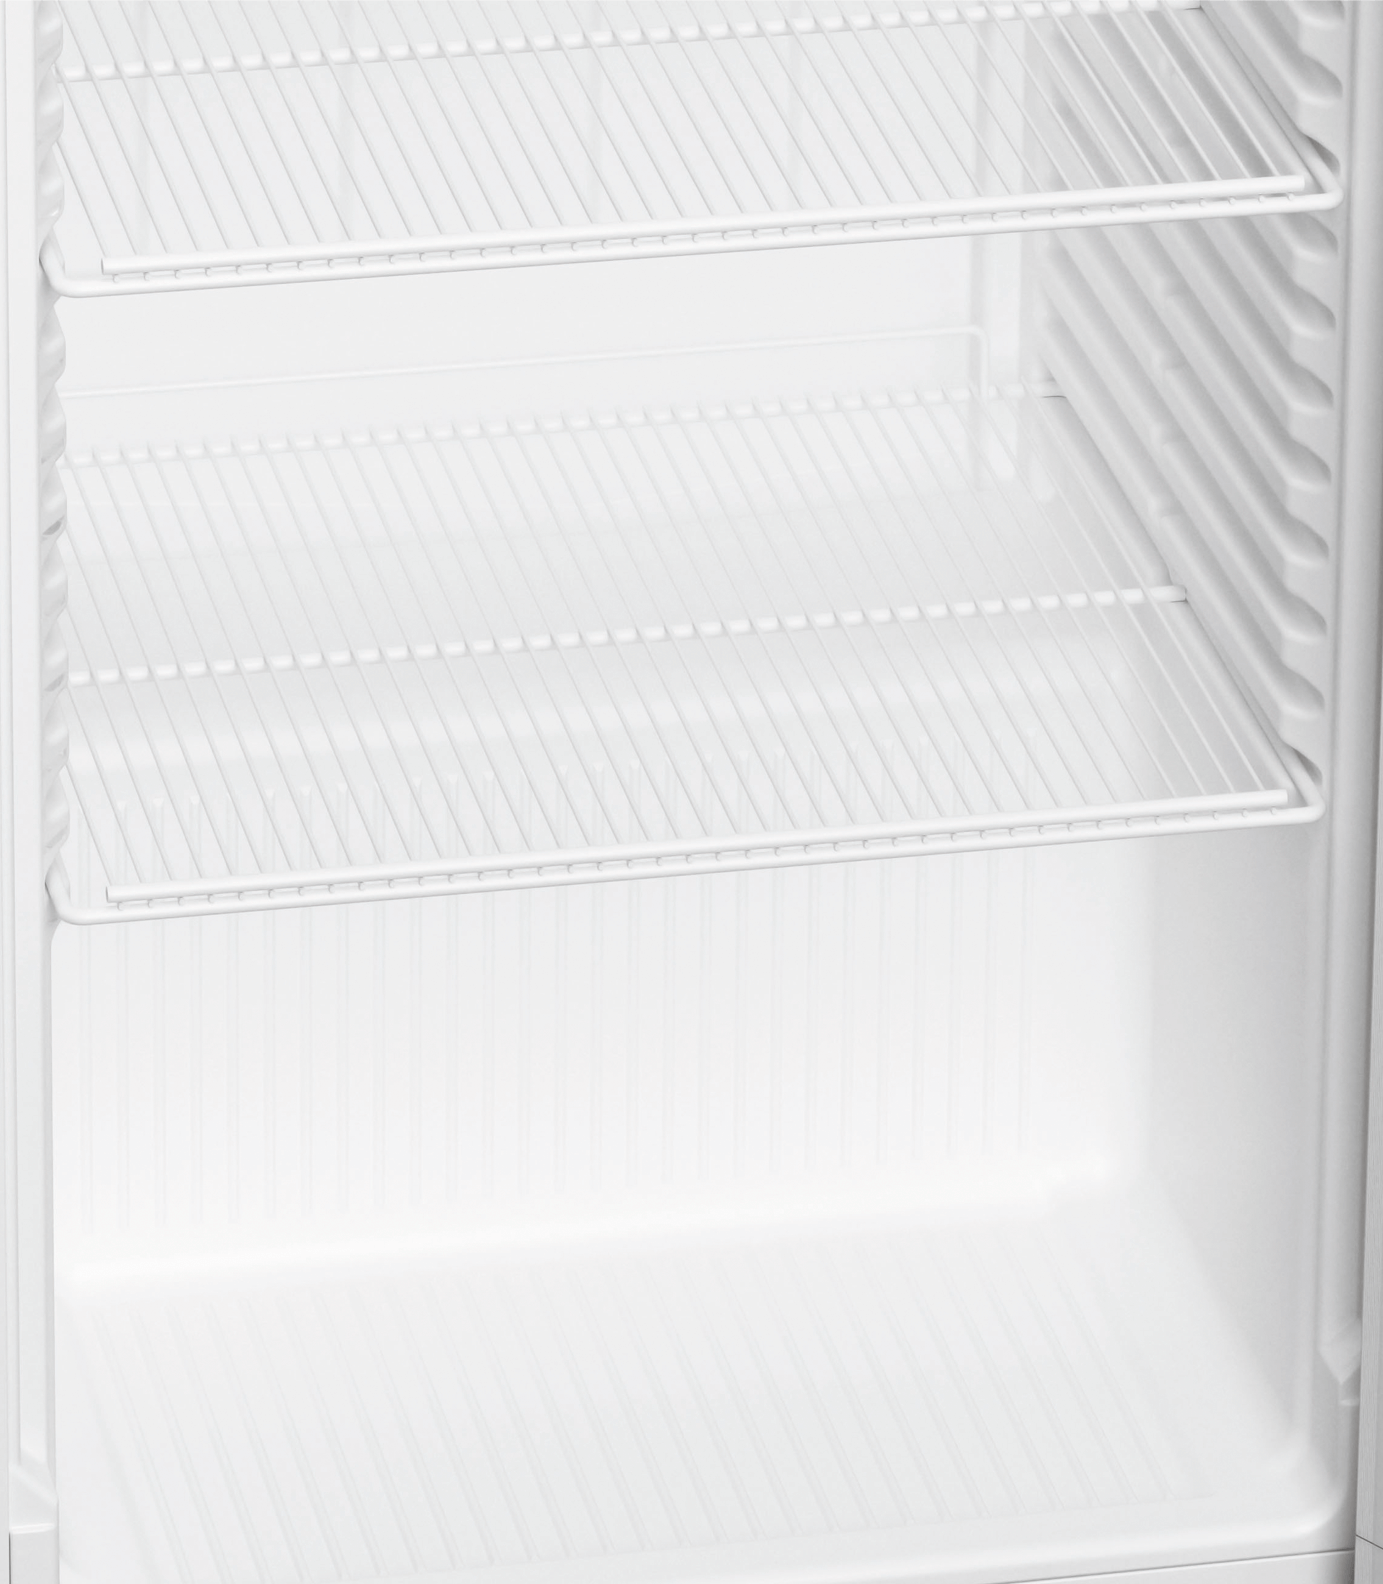 Kühlschrank MRFvc 5501-20 White Steel 544 Liter